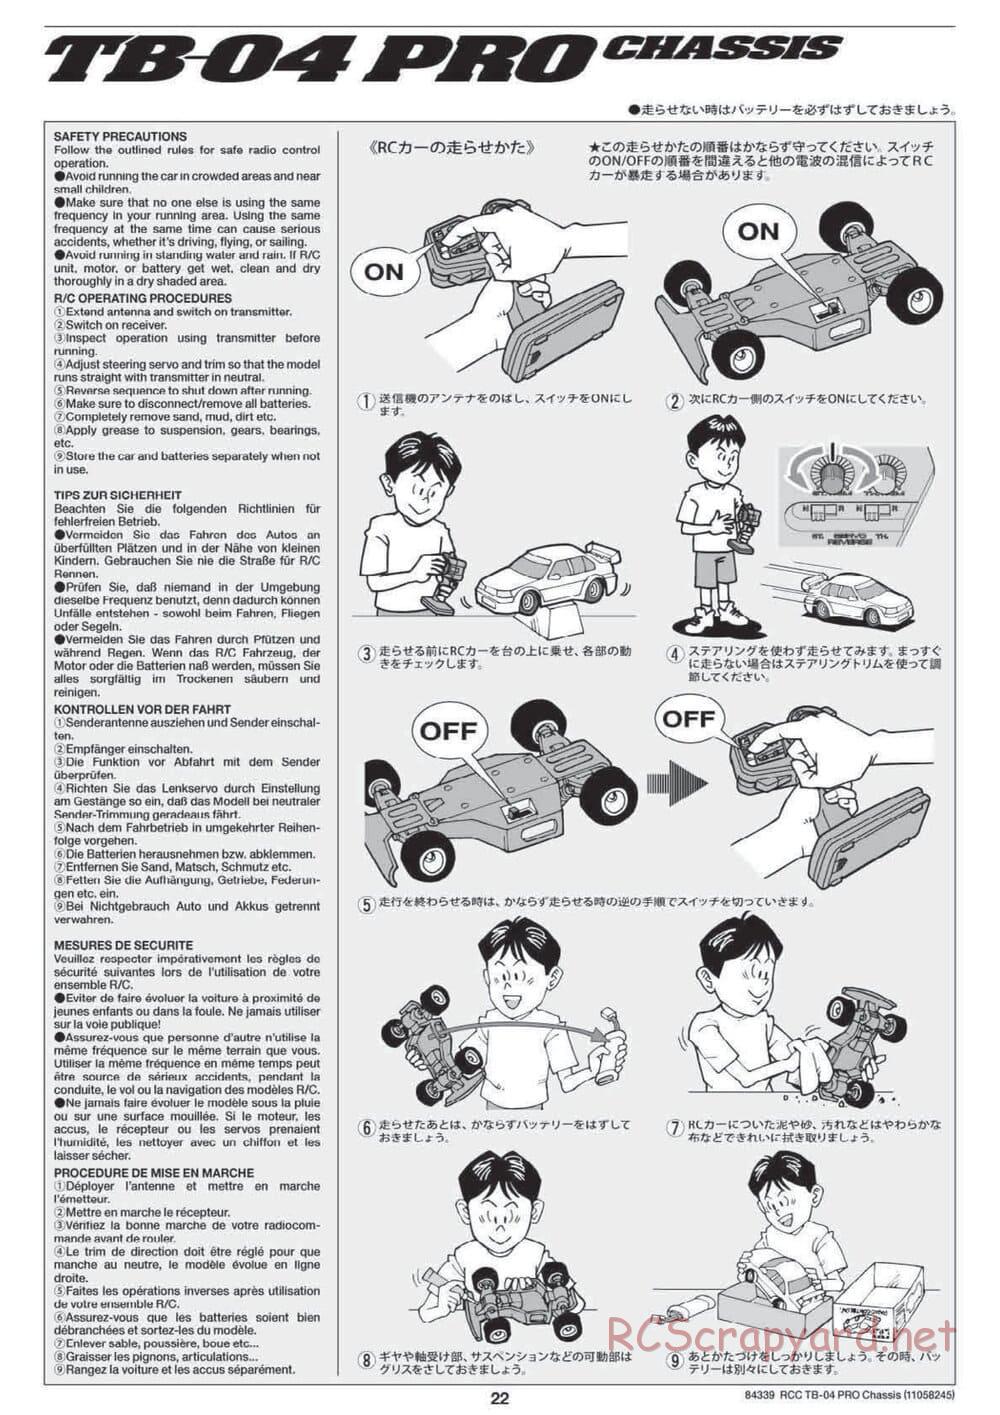 Tamiya - TB-04 Pro Chassis - Manual - Page 22